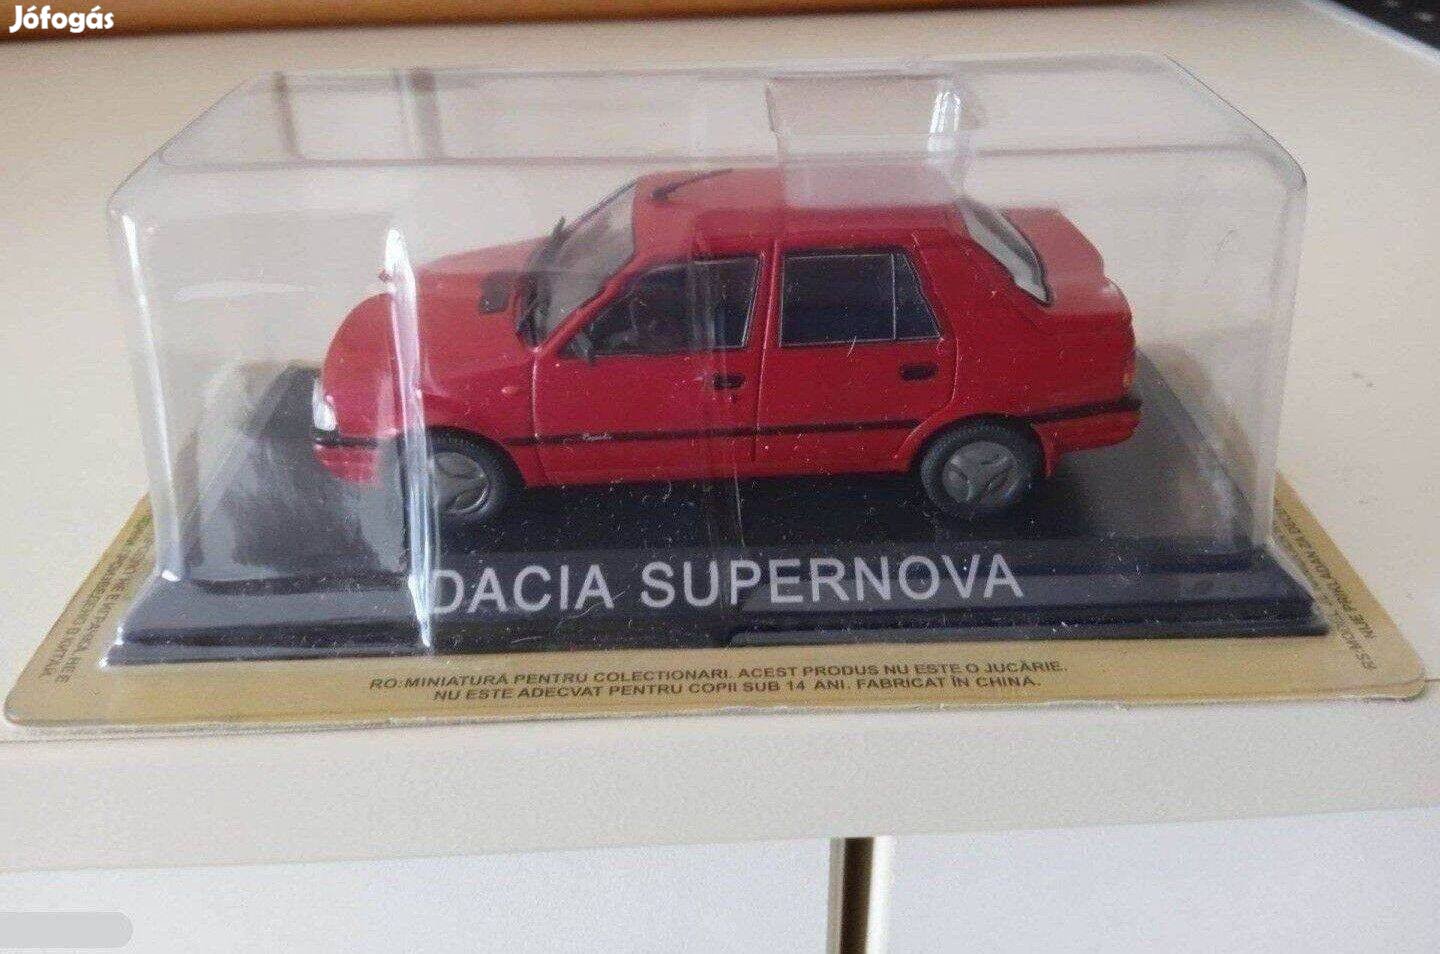 Dacía Supernova kisauto modell 1/43 Eladó